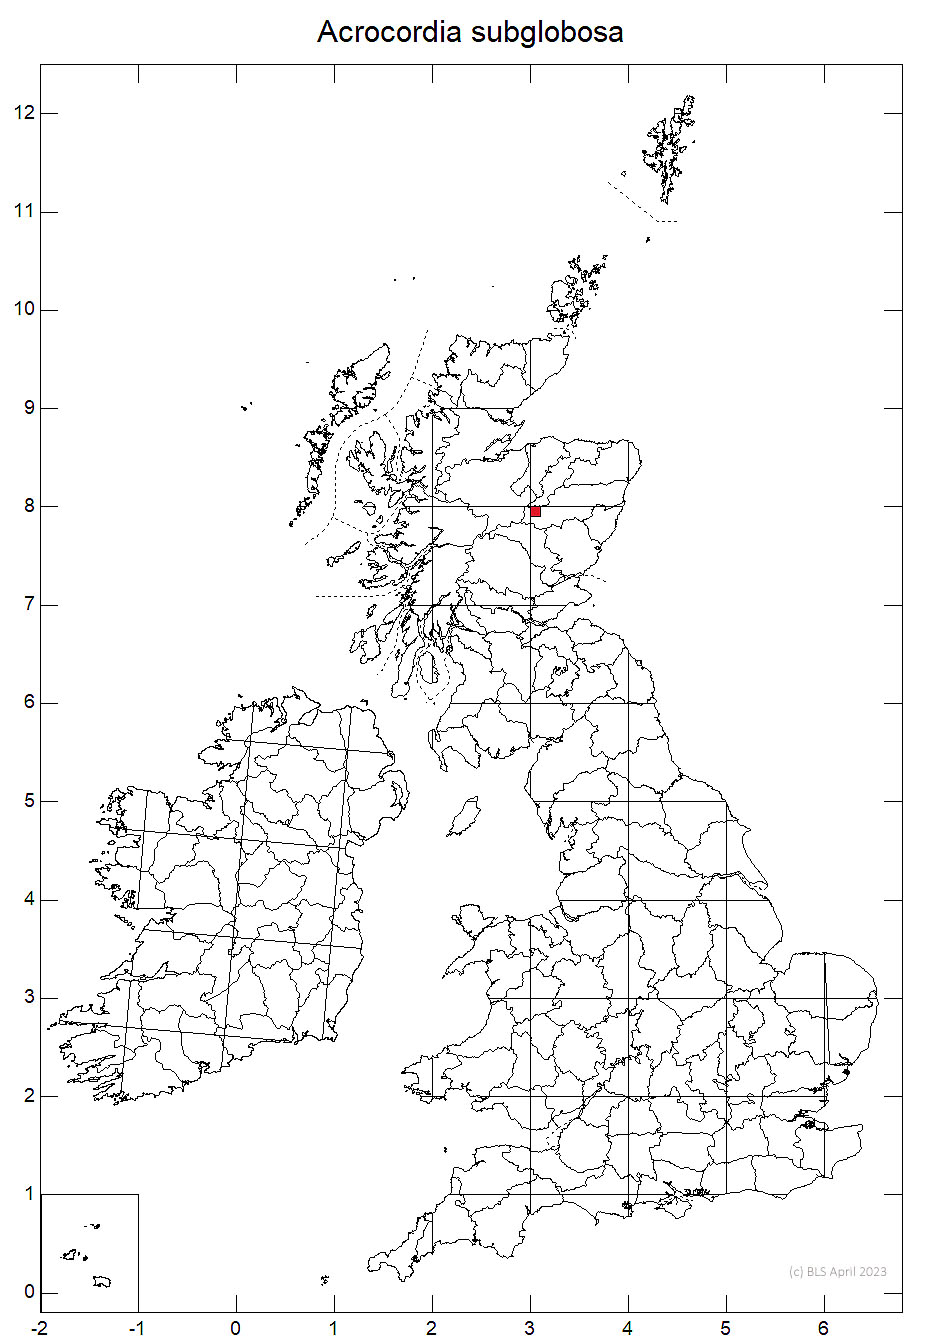 Acrocordia subglobosa 10km sq distribution map